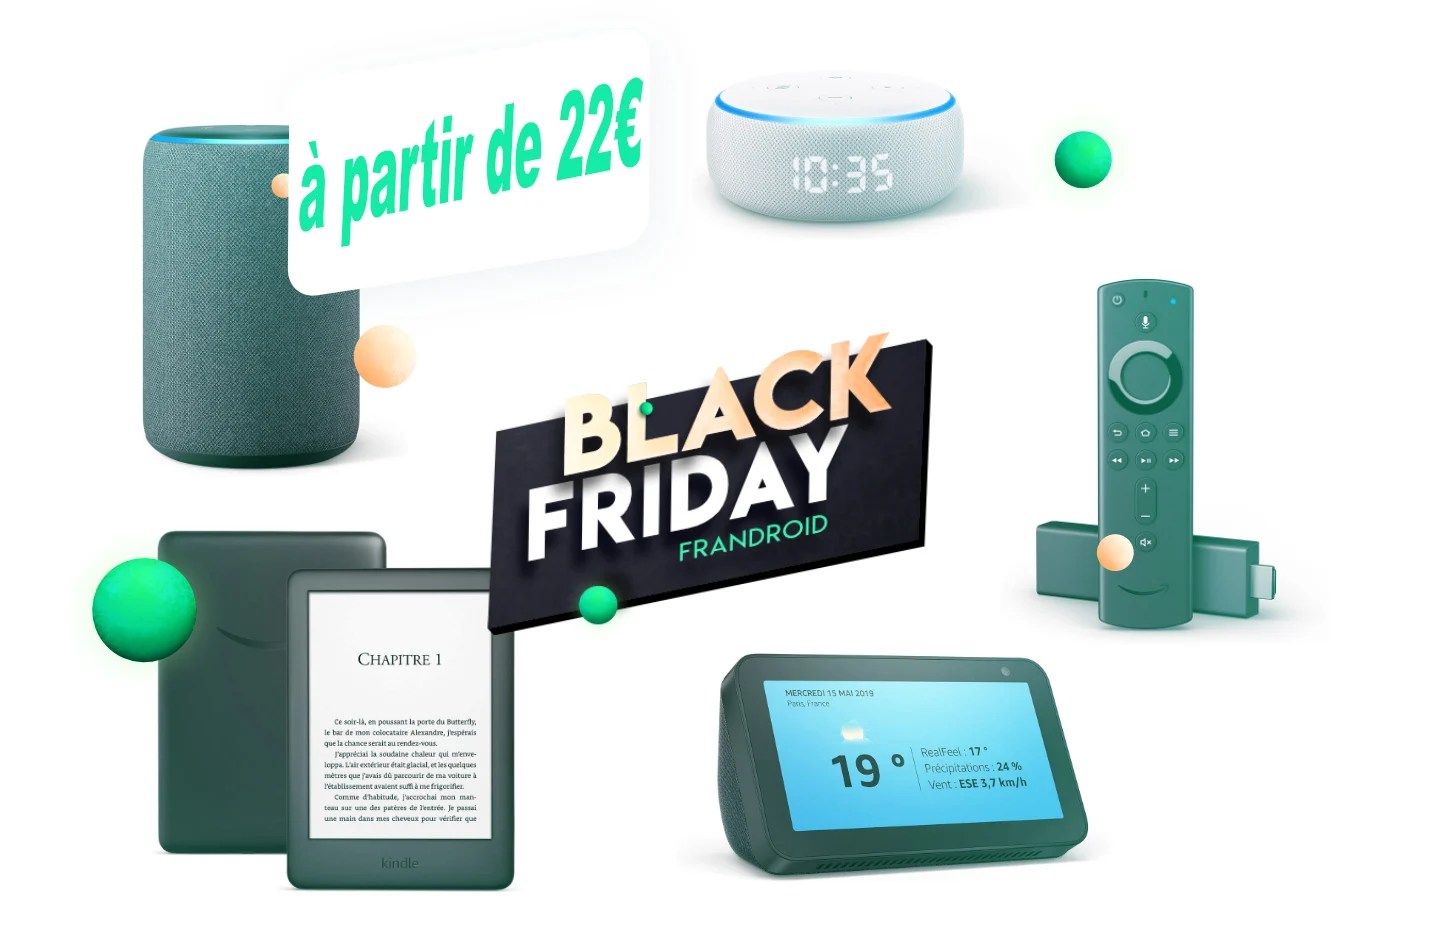 Grosse promotion sur les produits Amazon (Echo, Kindle et Fire) pour le Black Friday